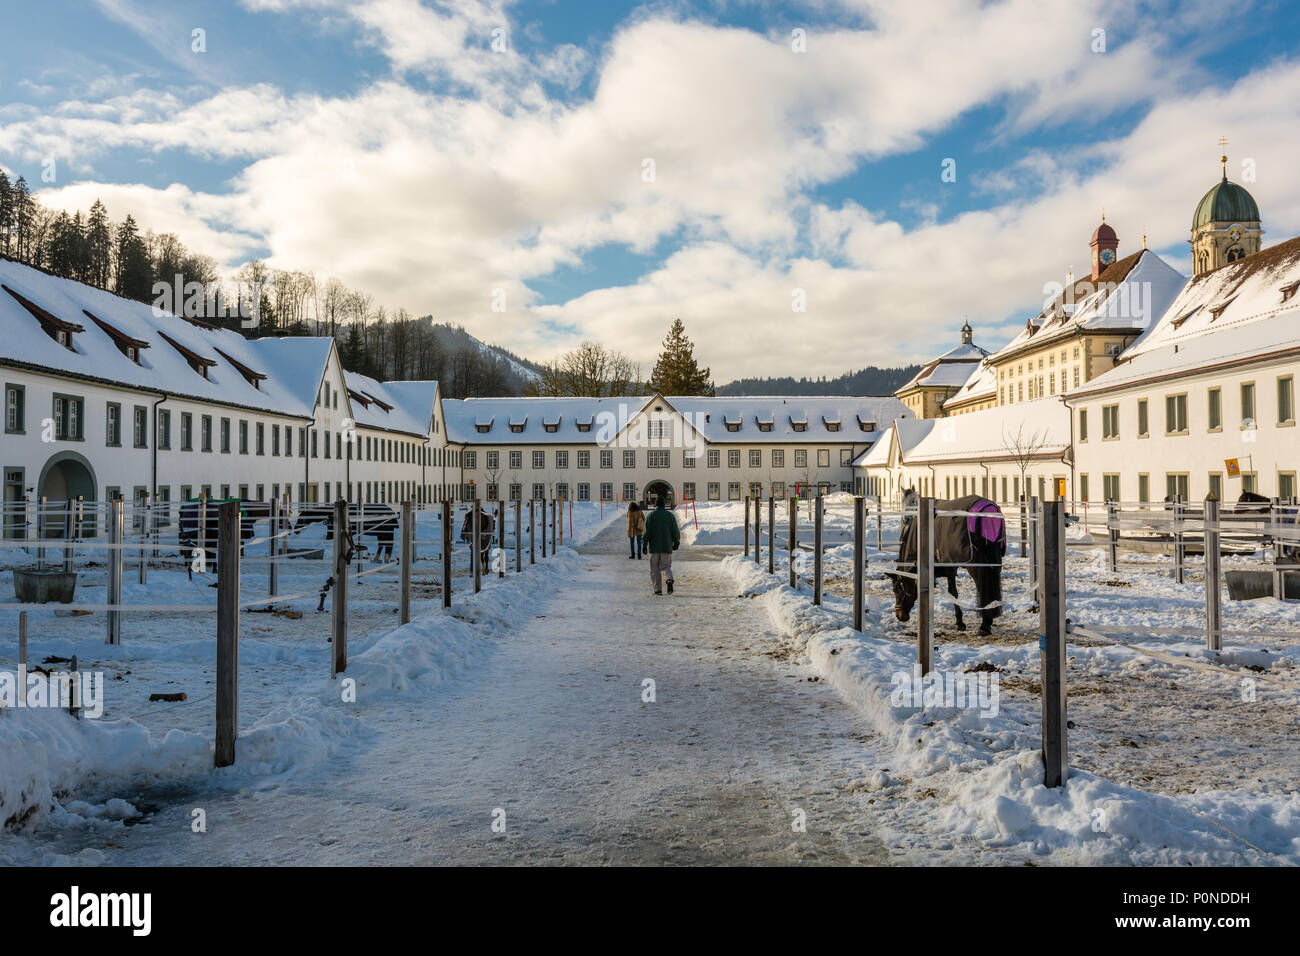 EINSIEDELN, Svizzera - Gennaio 2016 - la gente camminare attraverso il maneggio vicino a Abbazia di Einsiedeln nel cantone di Svitto, Svizzera Foto Stock